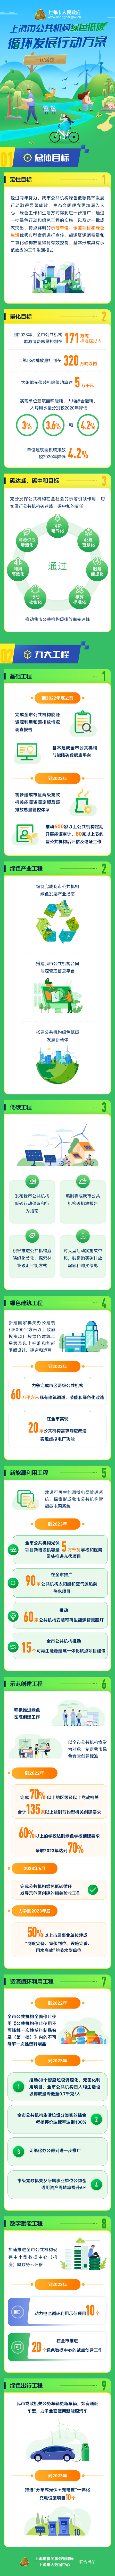 一图读懂《上海市公共机构绿色低碳循环发展行动方案》.png